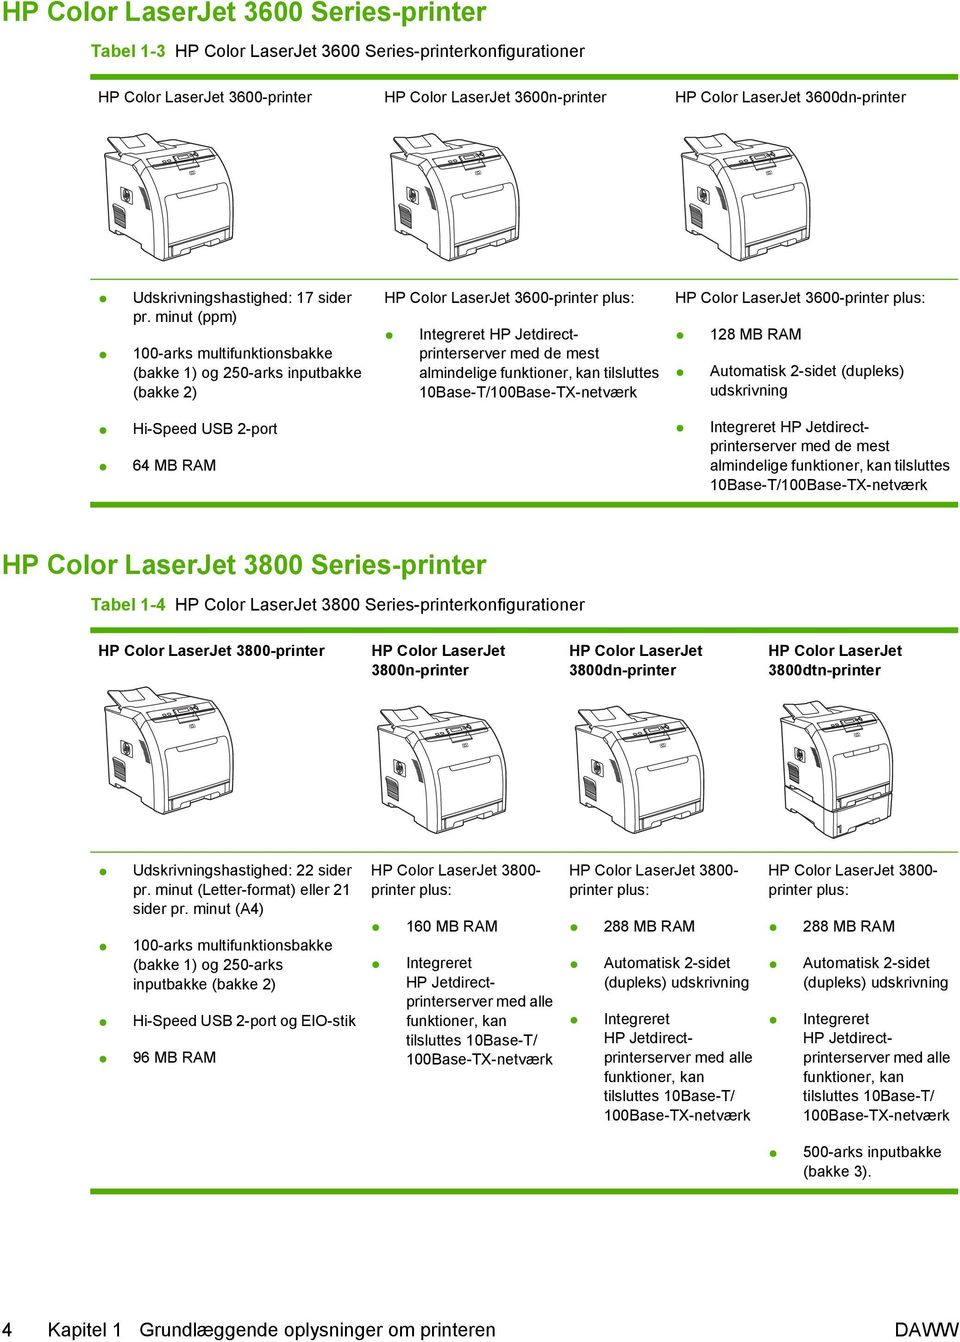 minut (ppm) 100-arks multifunktionsbakke (bakke 1) og 250-arks inputbakke (bakke 2) HP Color LaserJet 3600-printer plus: Integreret HP Jetdirectprinterserver med de mest almindelige funktioner, kan